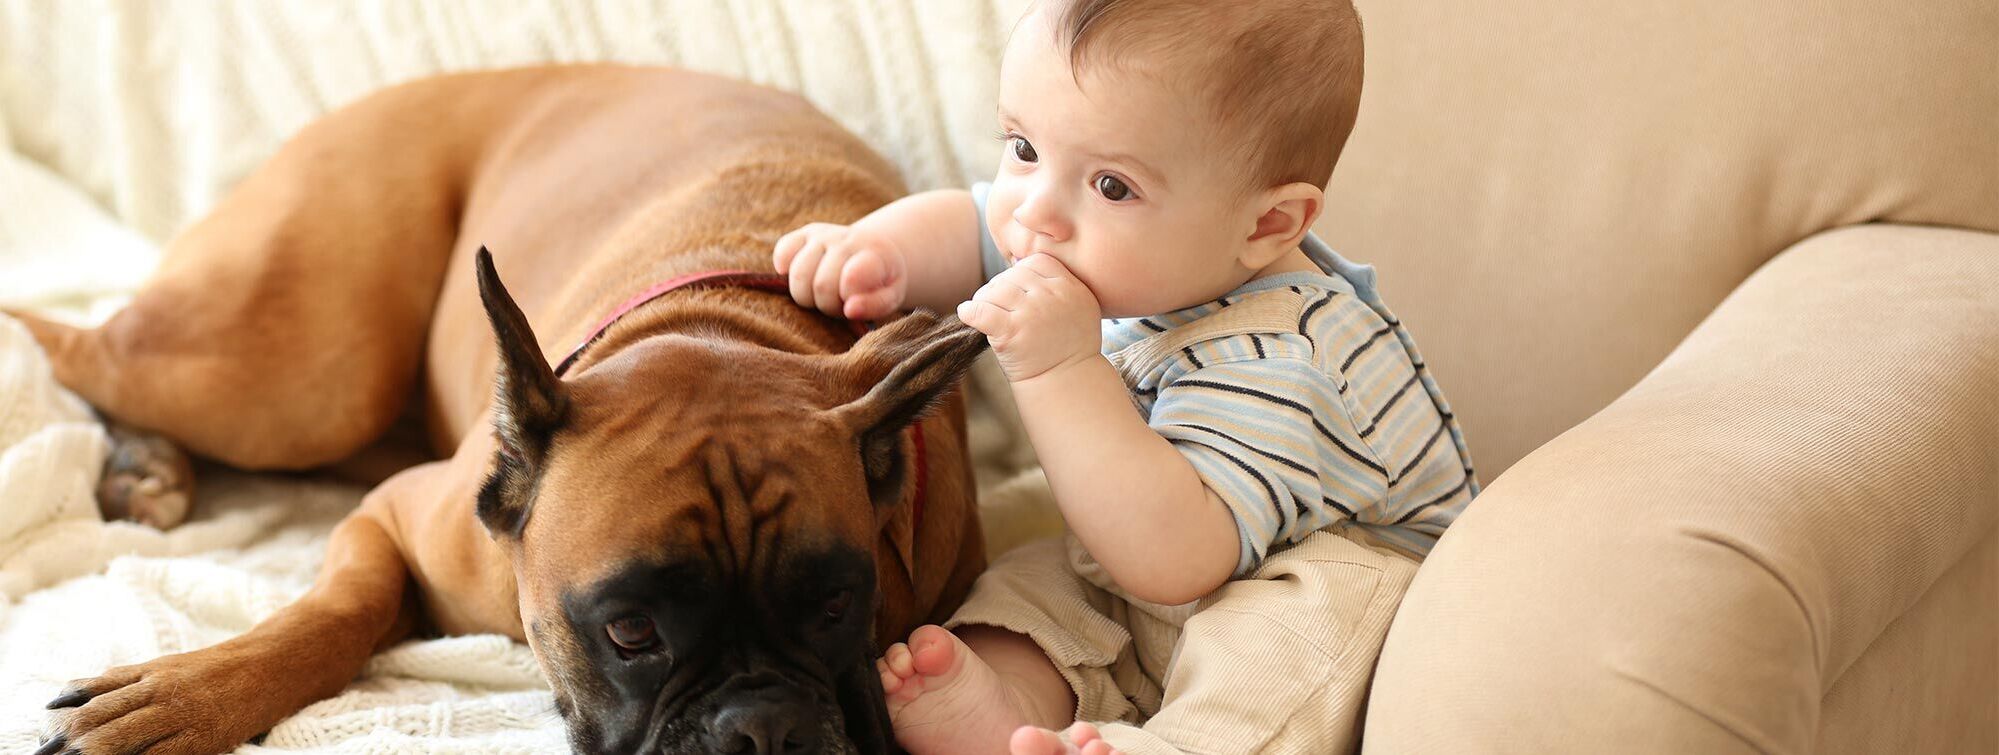 Dog and baby - Dr. Iris Manig, prakt. Tierärztin